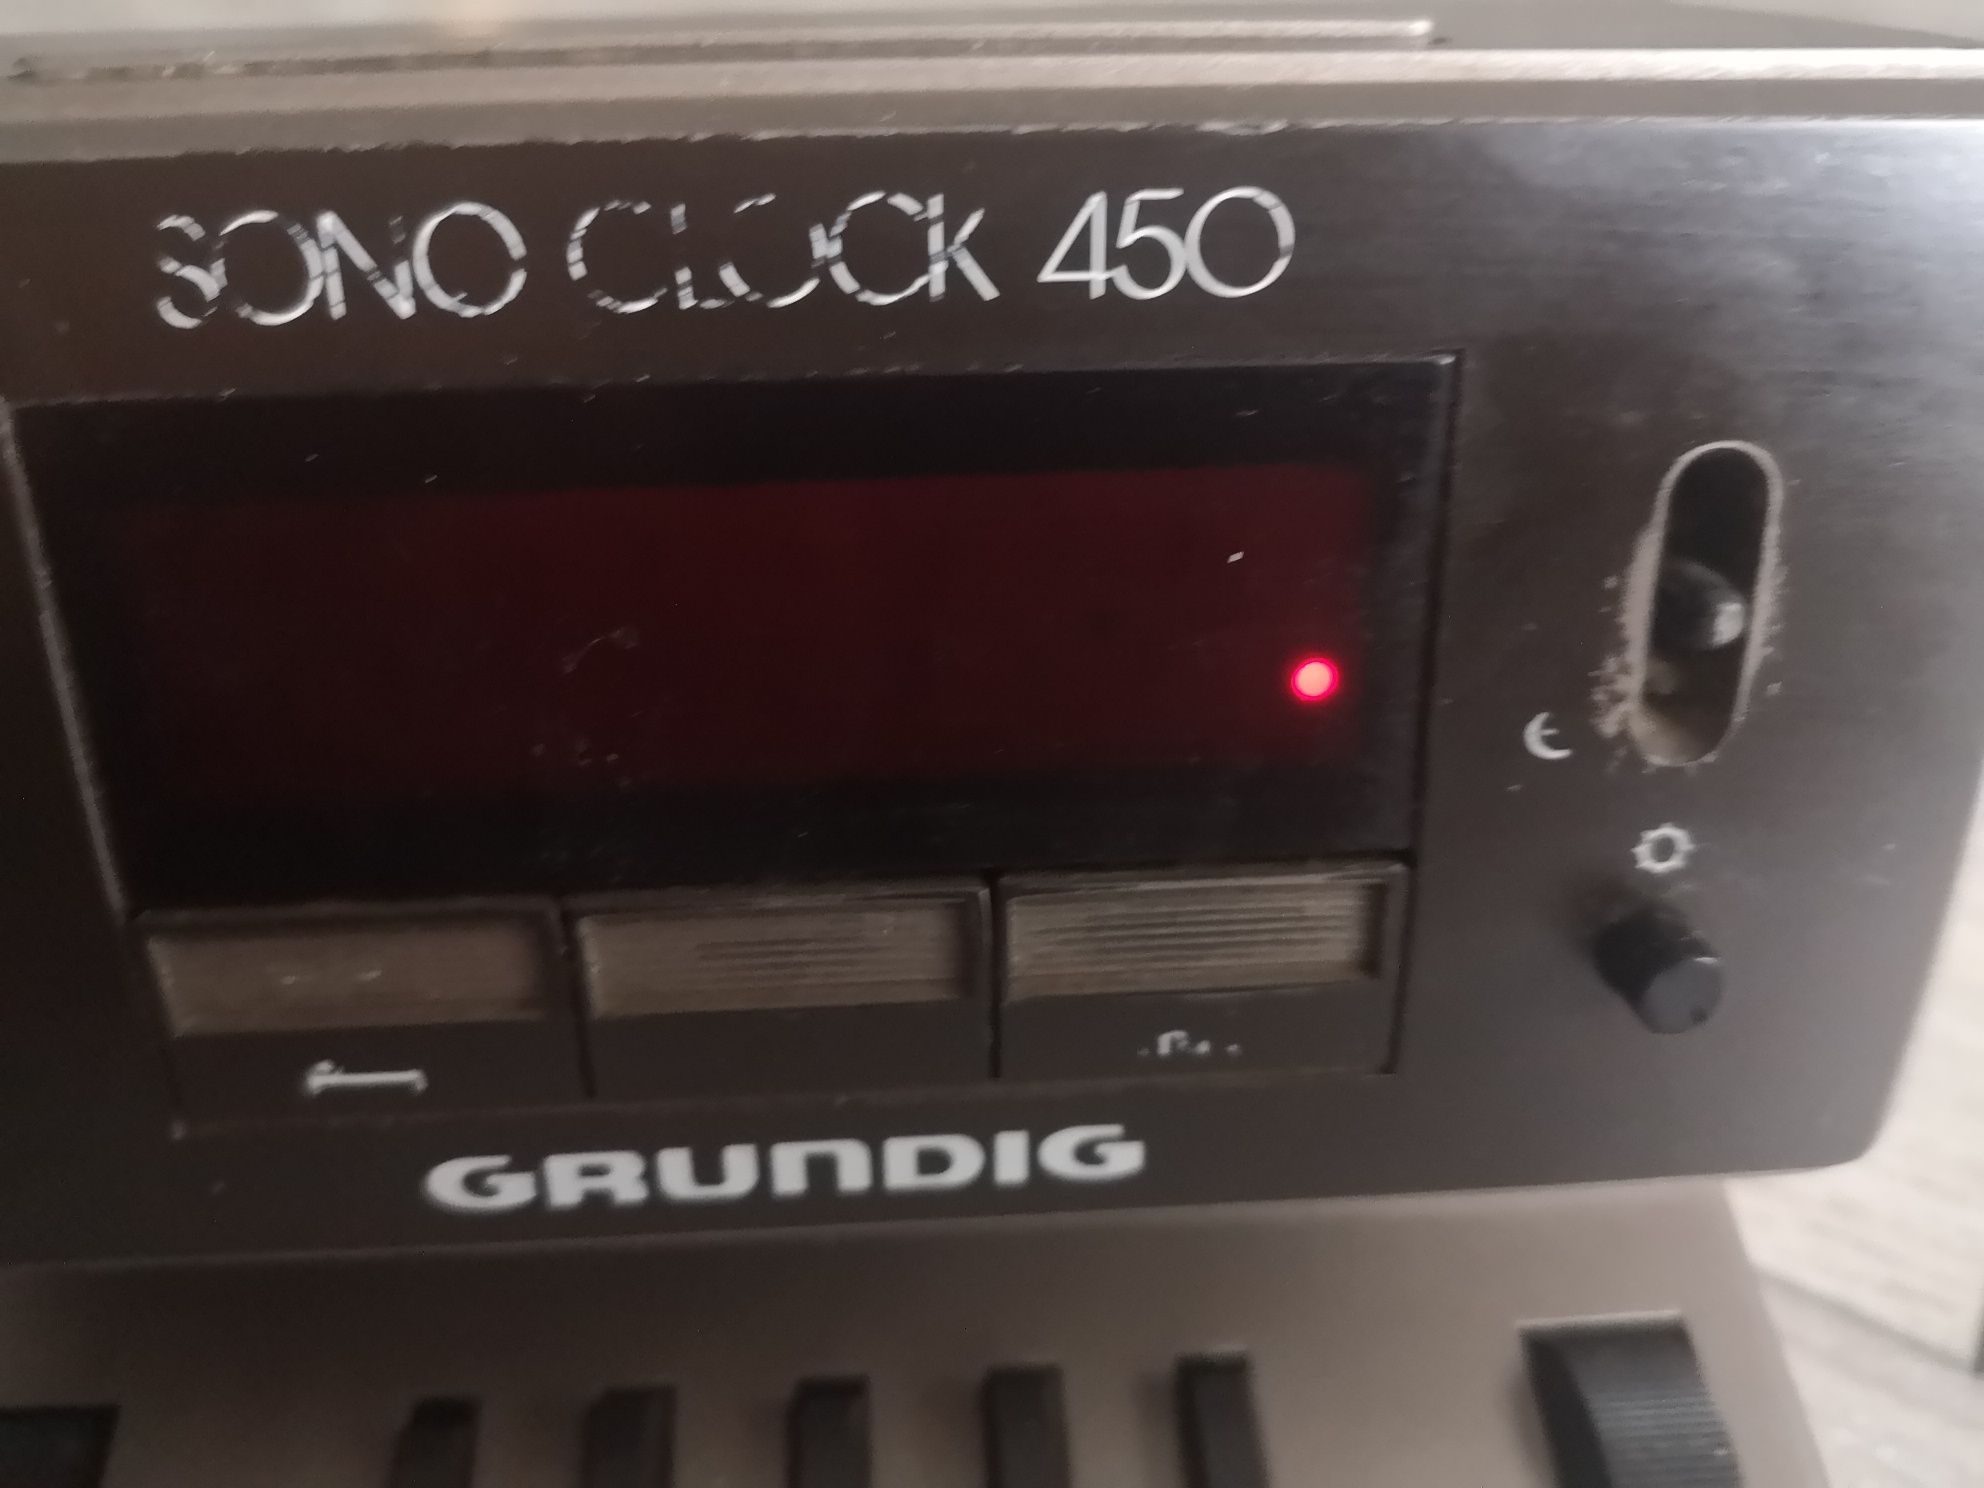 Radio budzik Grundig sono clock 450.